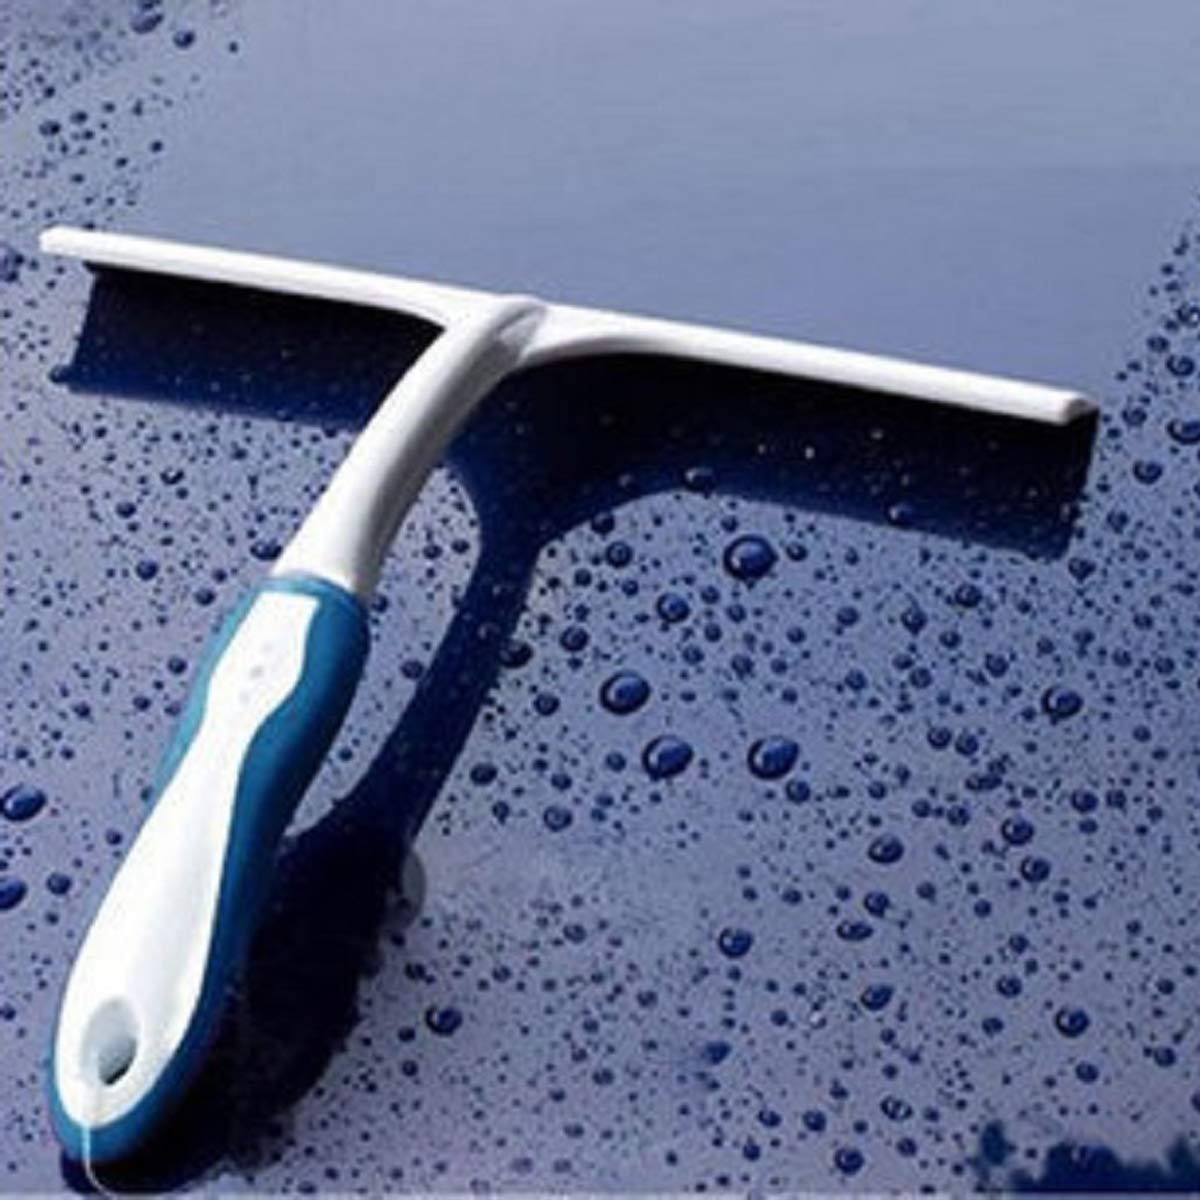 Setokaya ガラススクイジー シリコン製 水切りワイパー T字型スクイジー 掃除 車用 ガラス 窓 お風呂 浴室 GSQ-02